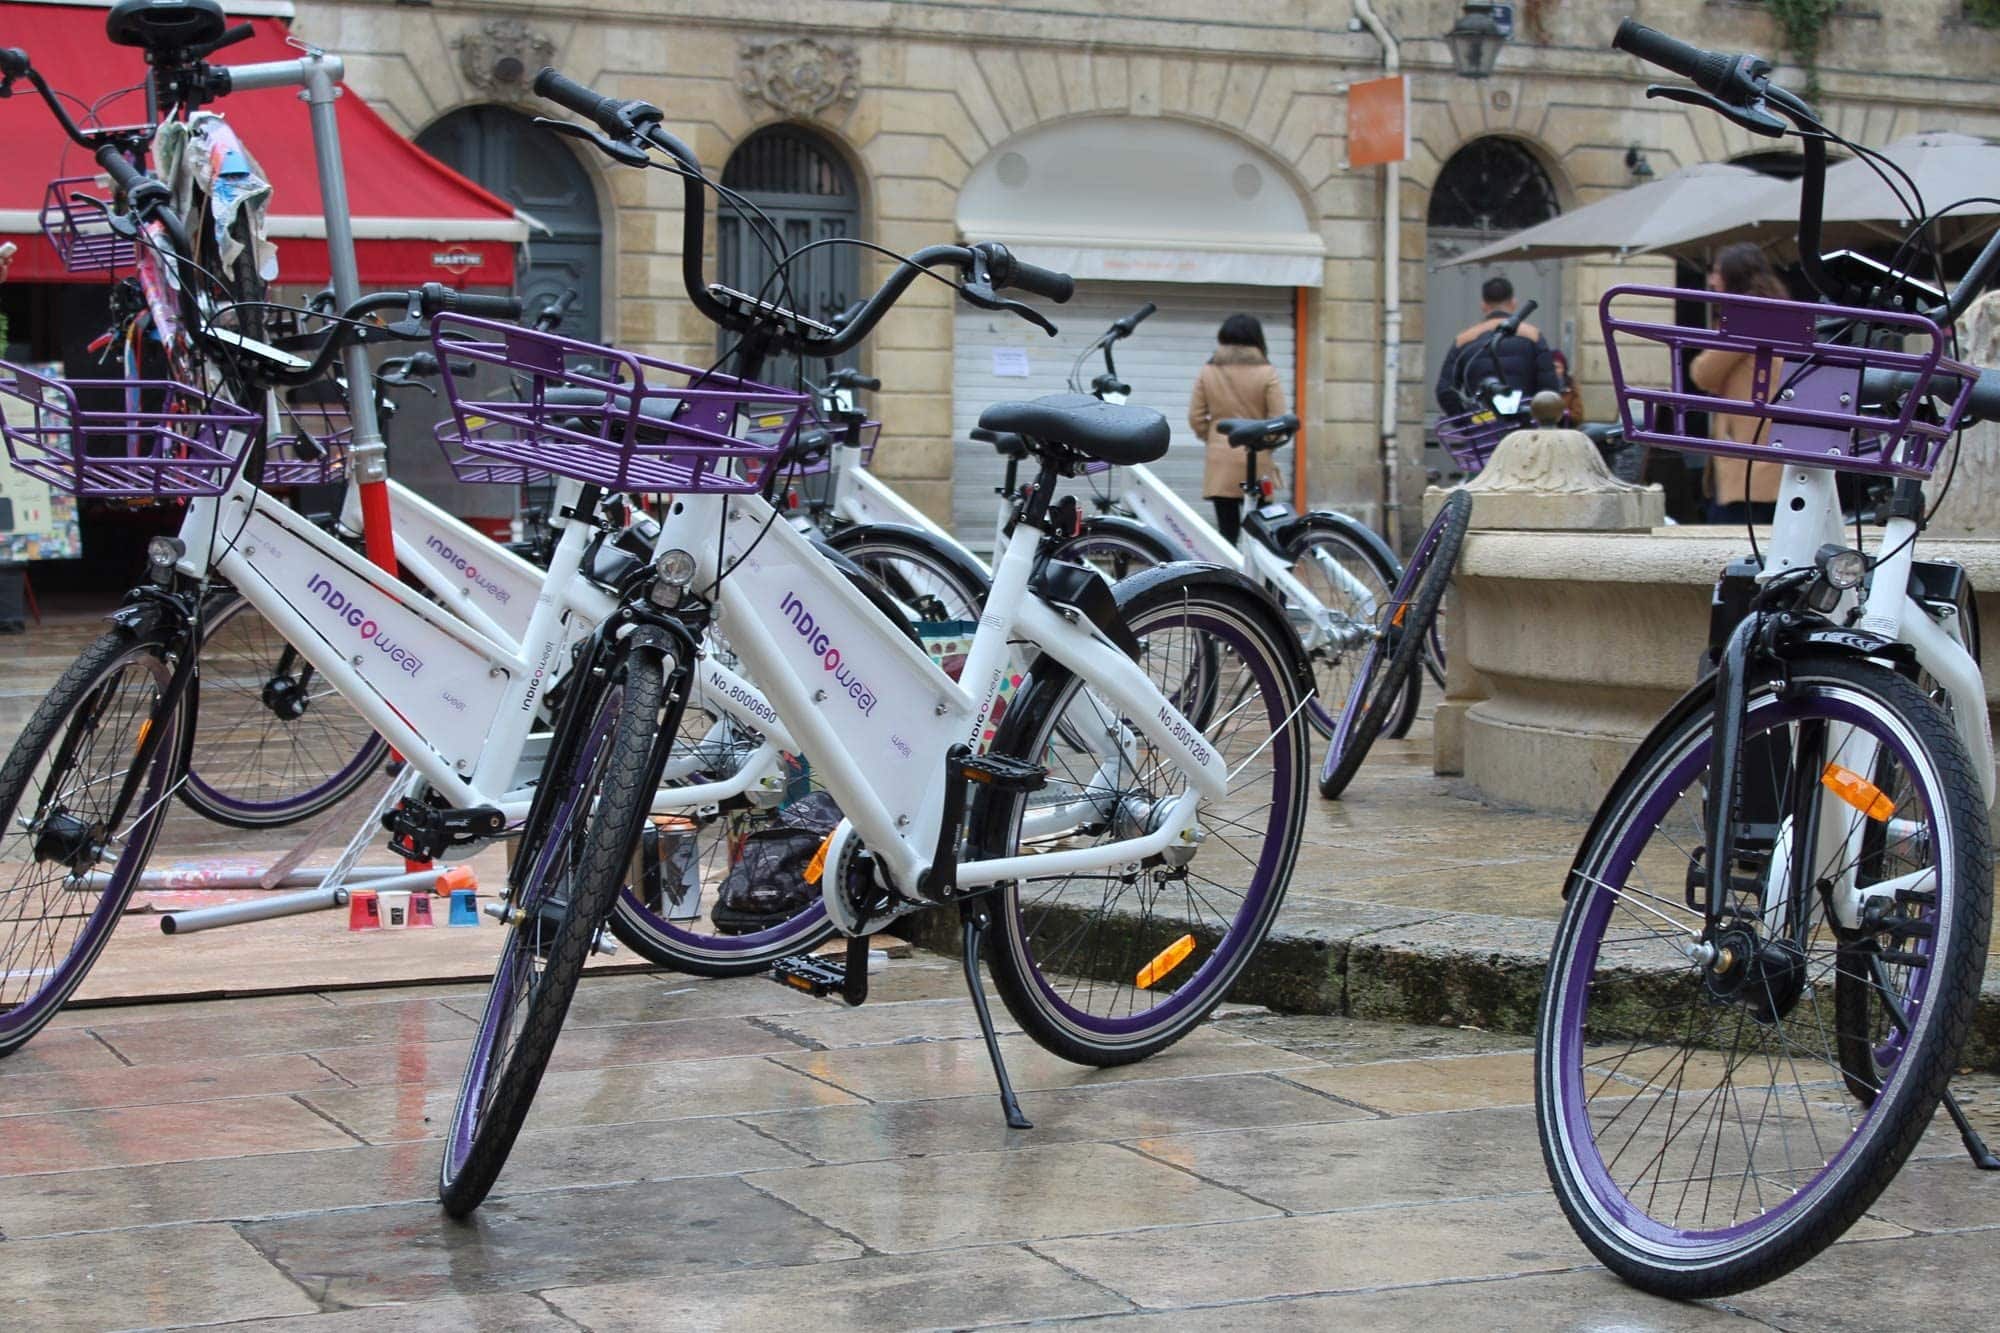 Des vélos papillons en libre service ont déjà investi les villes de nombreuses villes de France, comme Bordeaux. (Photo Alexandra Jammet / Rue89 Bordeaux)